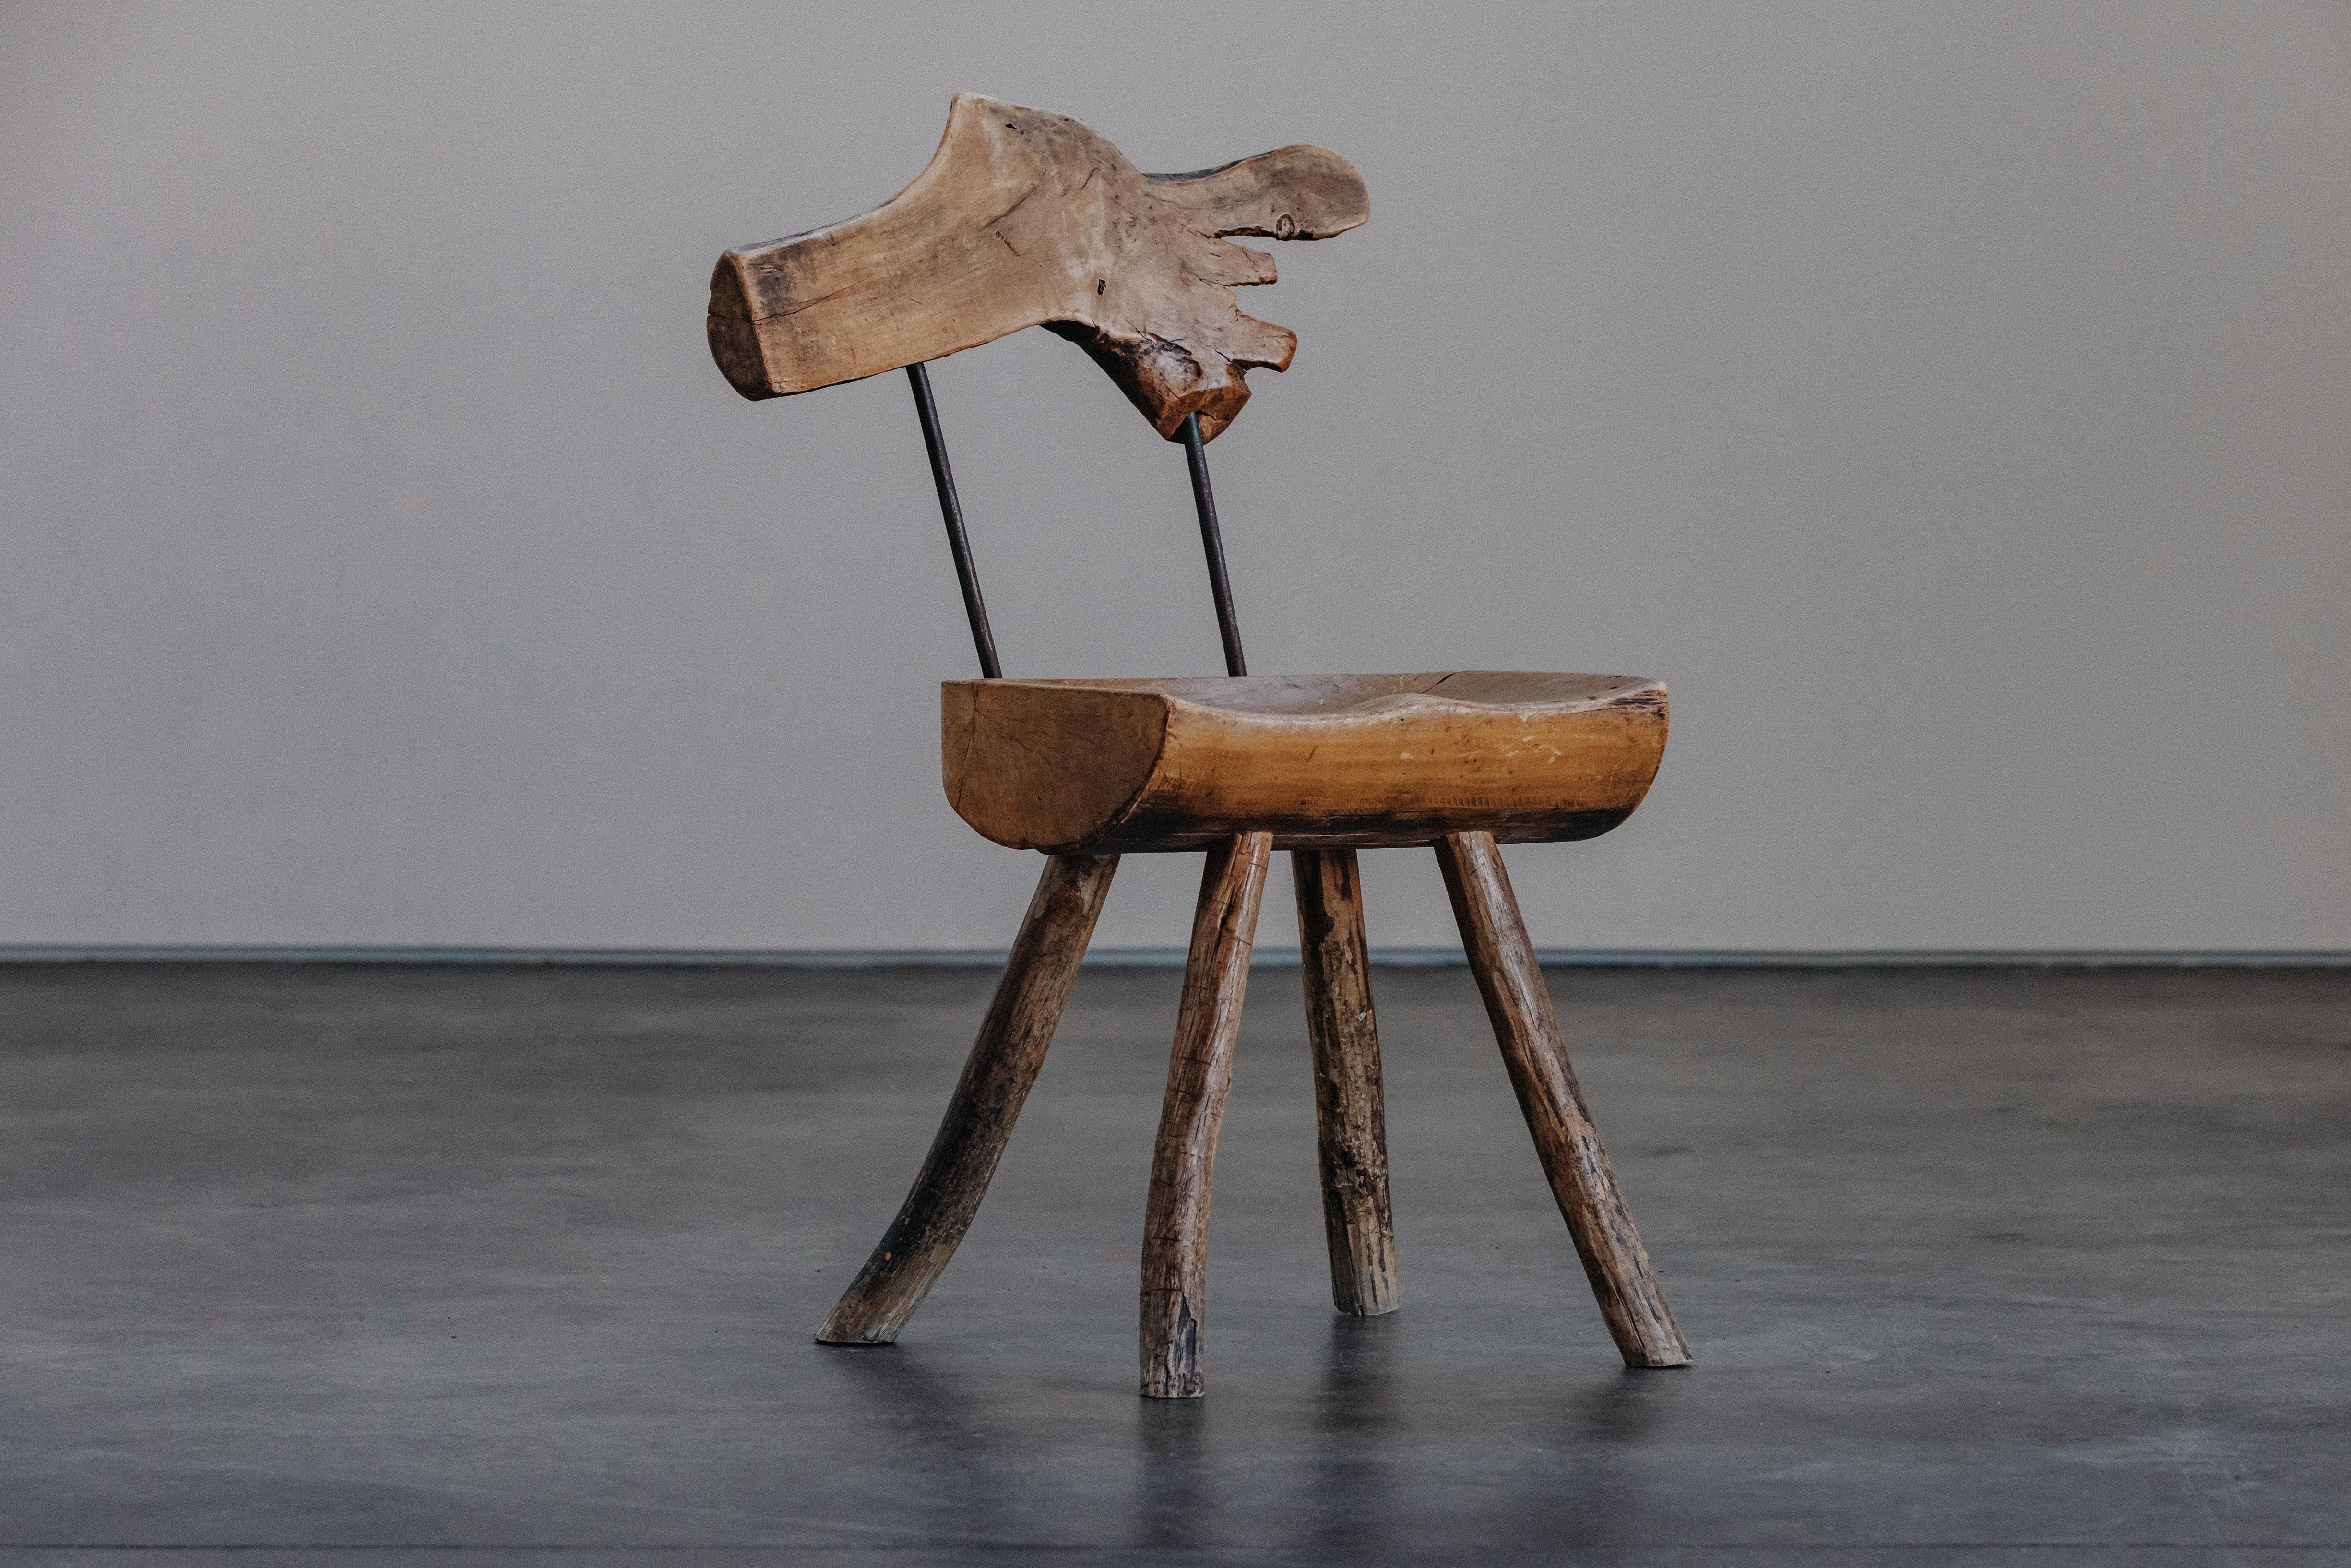 Primitiver Stuhl aus Kiefer und Stahl, CIRCA 1950.  Massive Kieferkonstruktion mit fantastischer Originalpatina und Gebrauchsspuren.